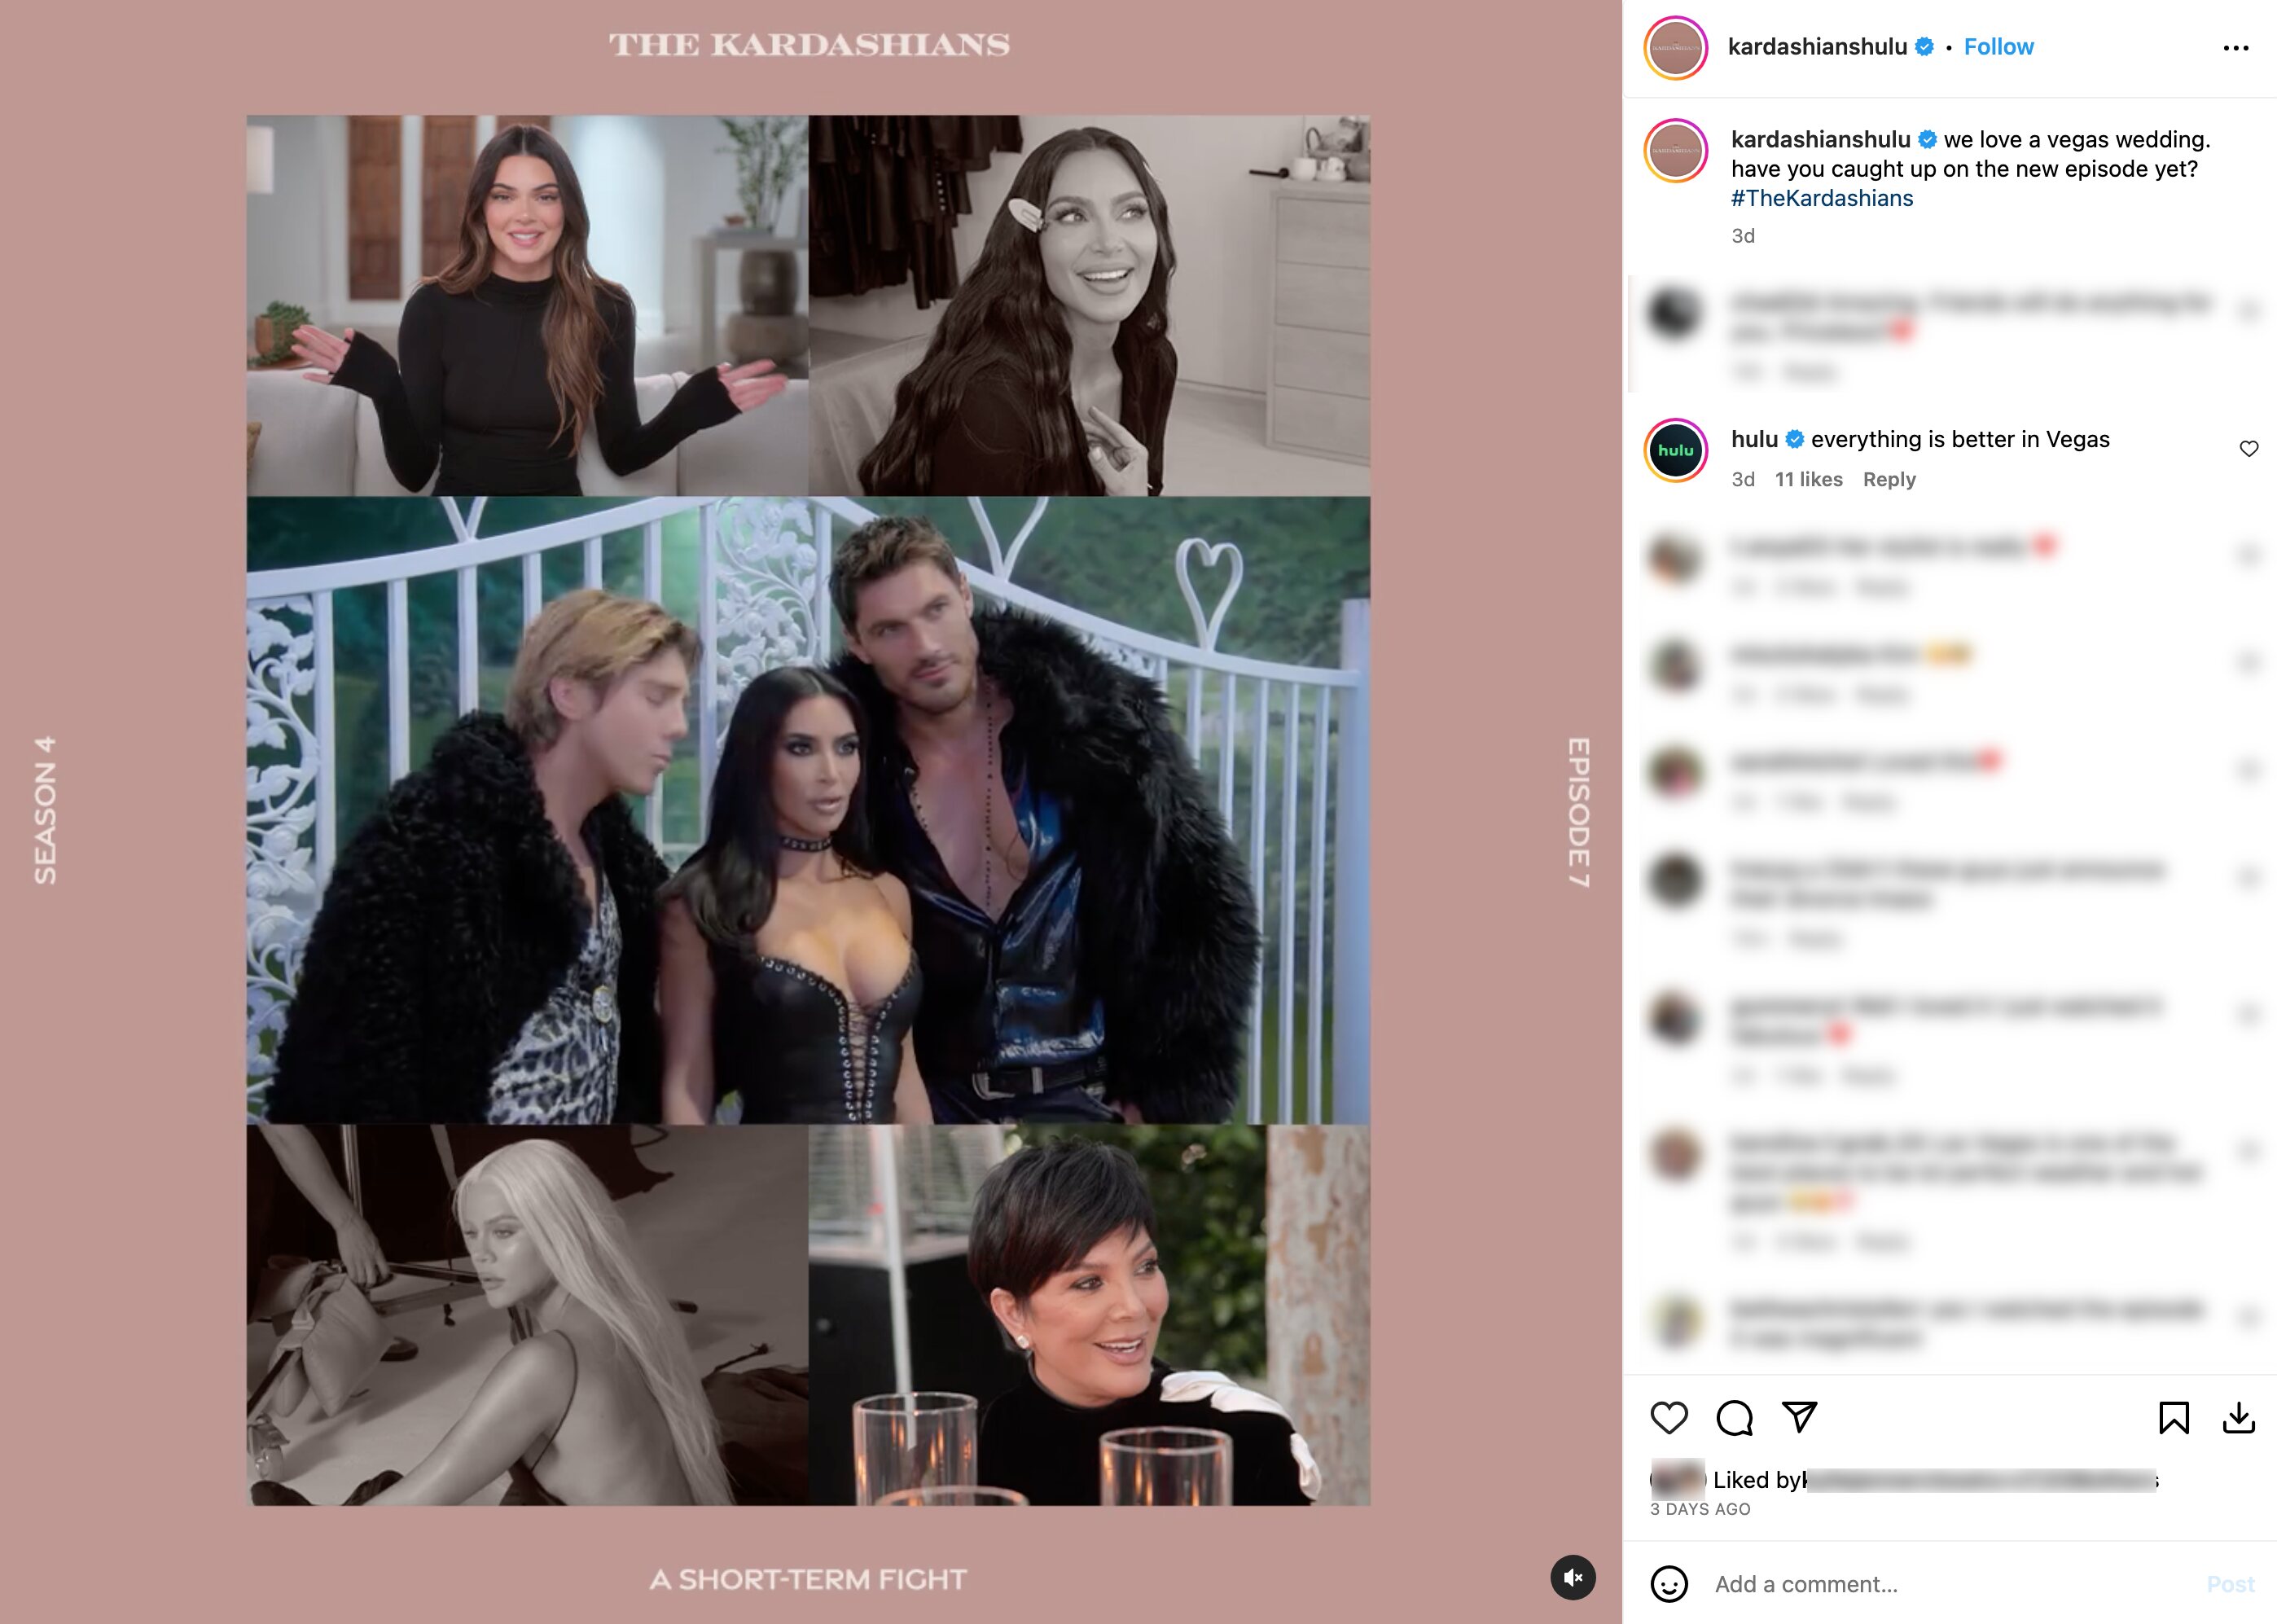 La boda se emitió en 'The Kardashians' un día antes del divorcio | Foto: Instagram